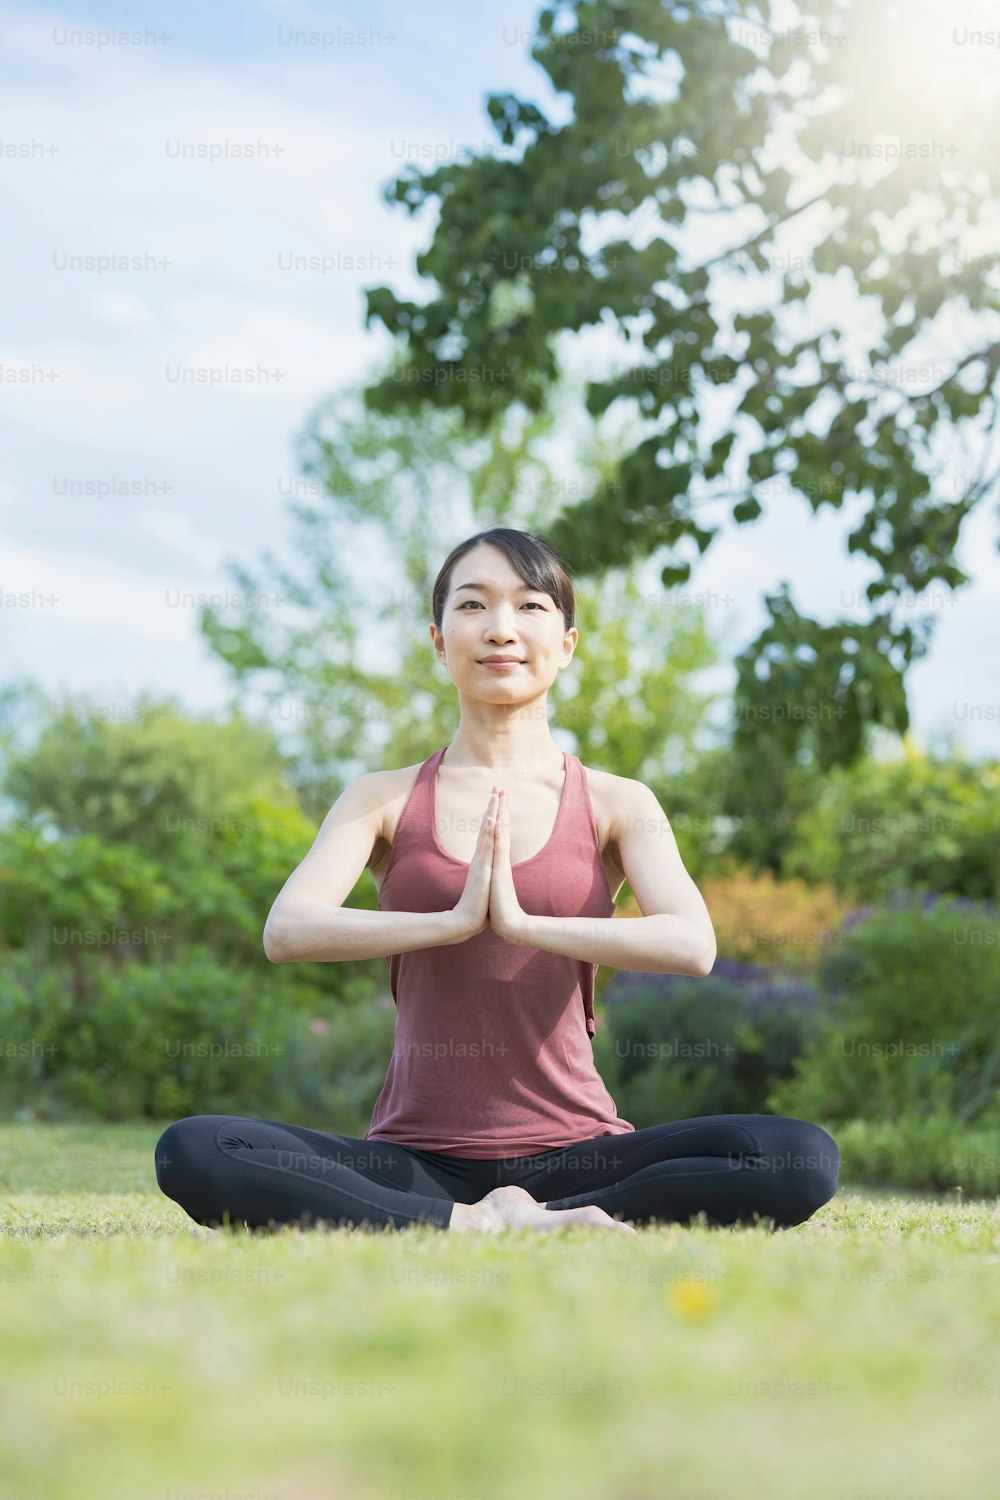 Junge Frau beim Yoga in einem grünen Park an einem schönen Tag